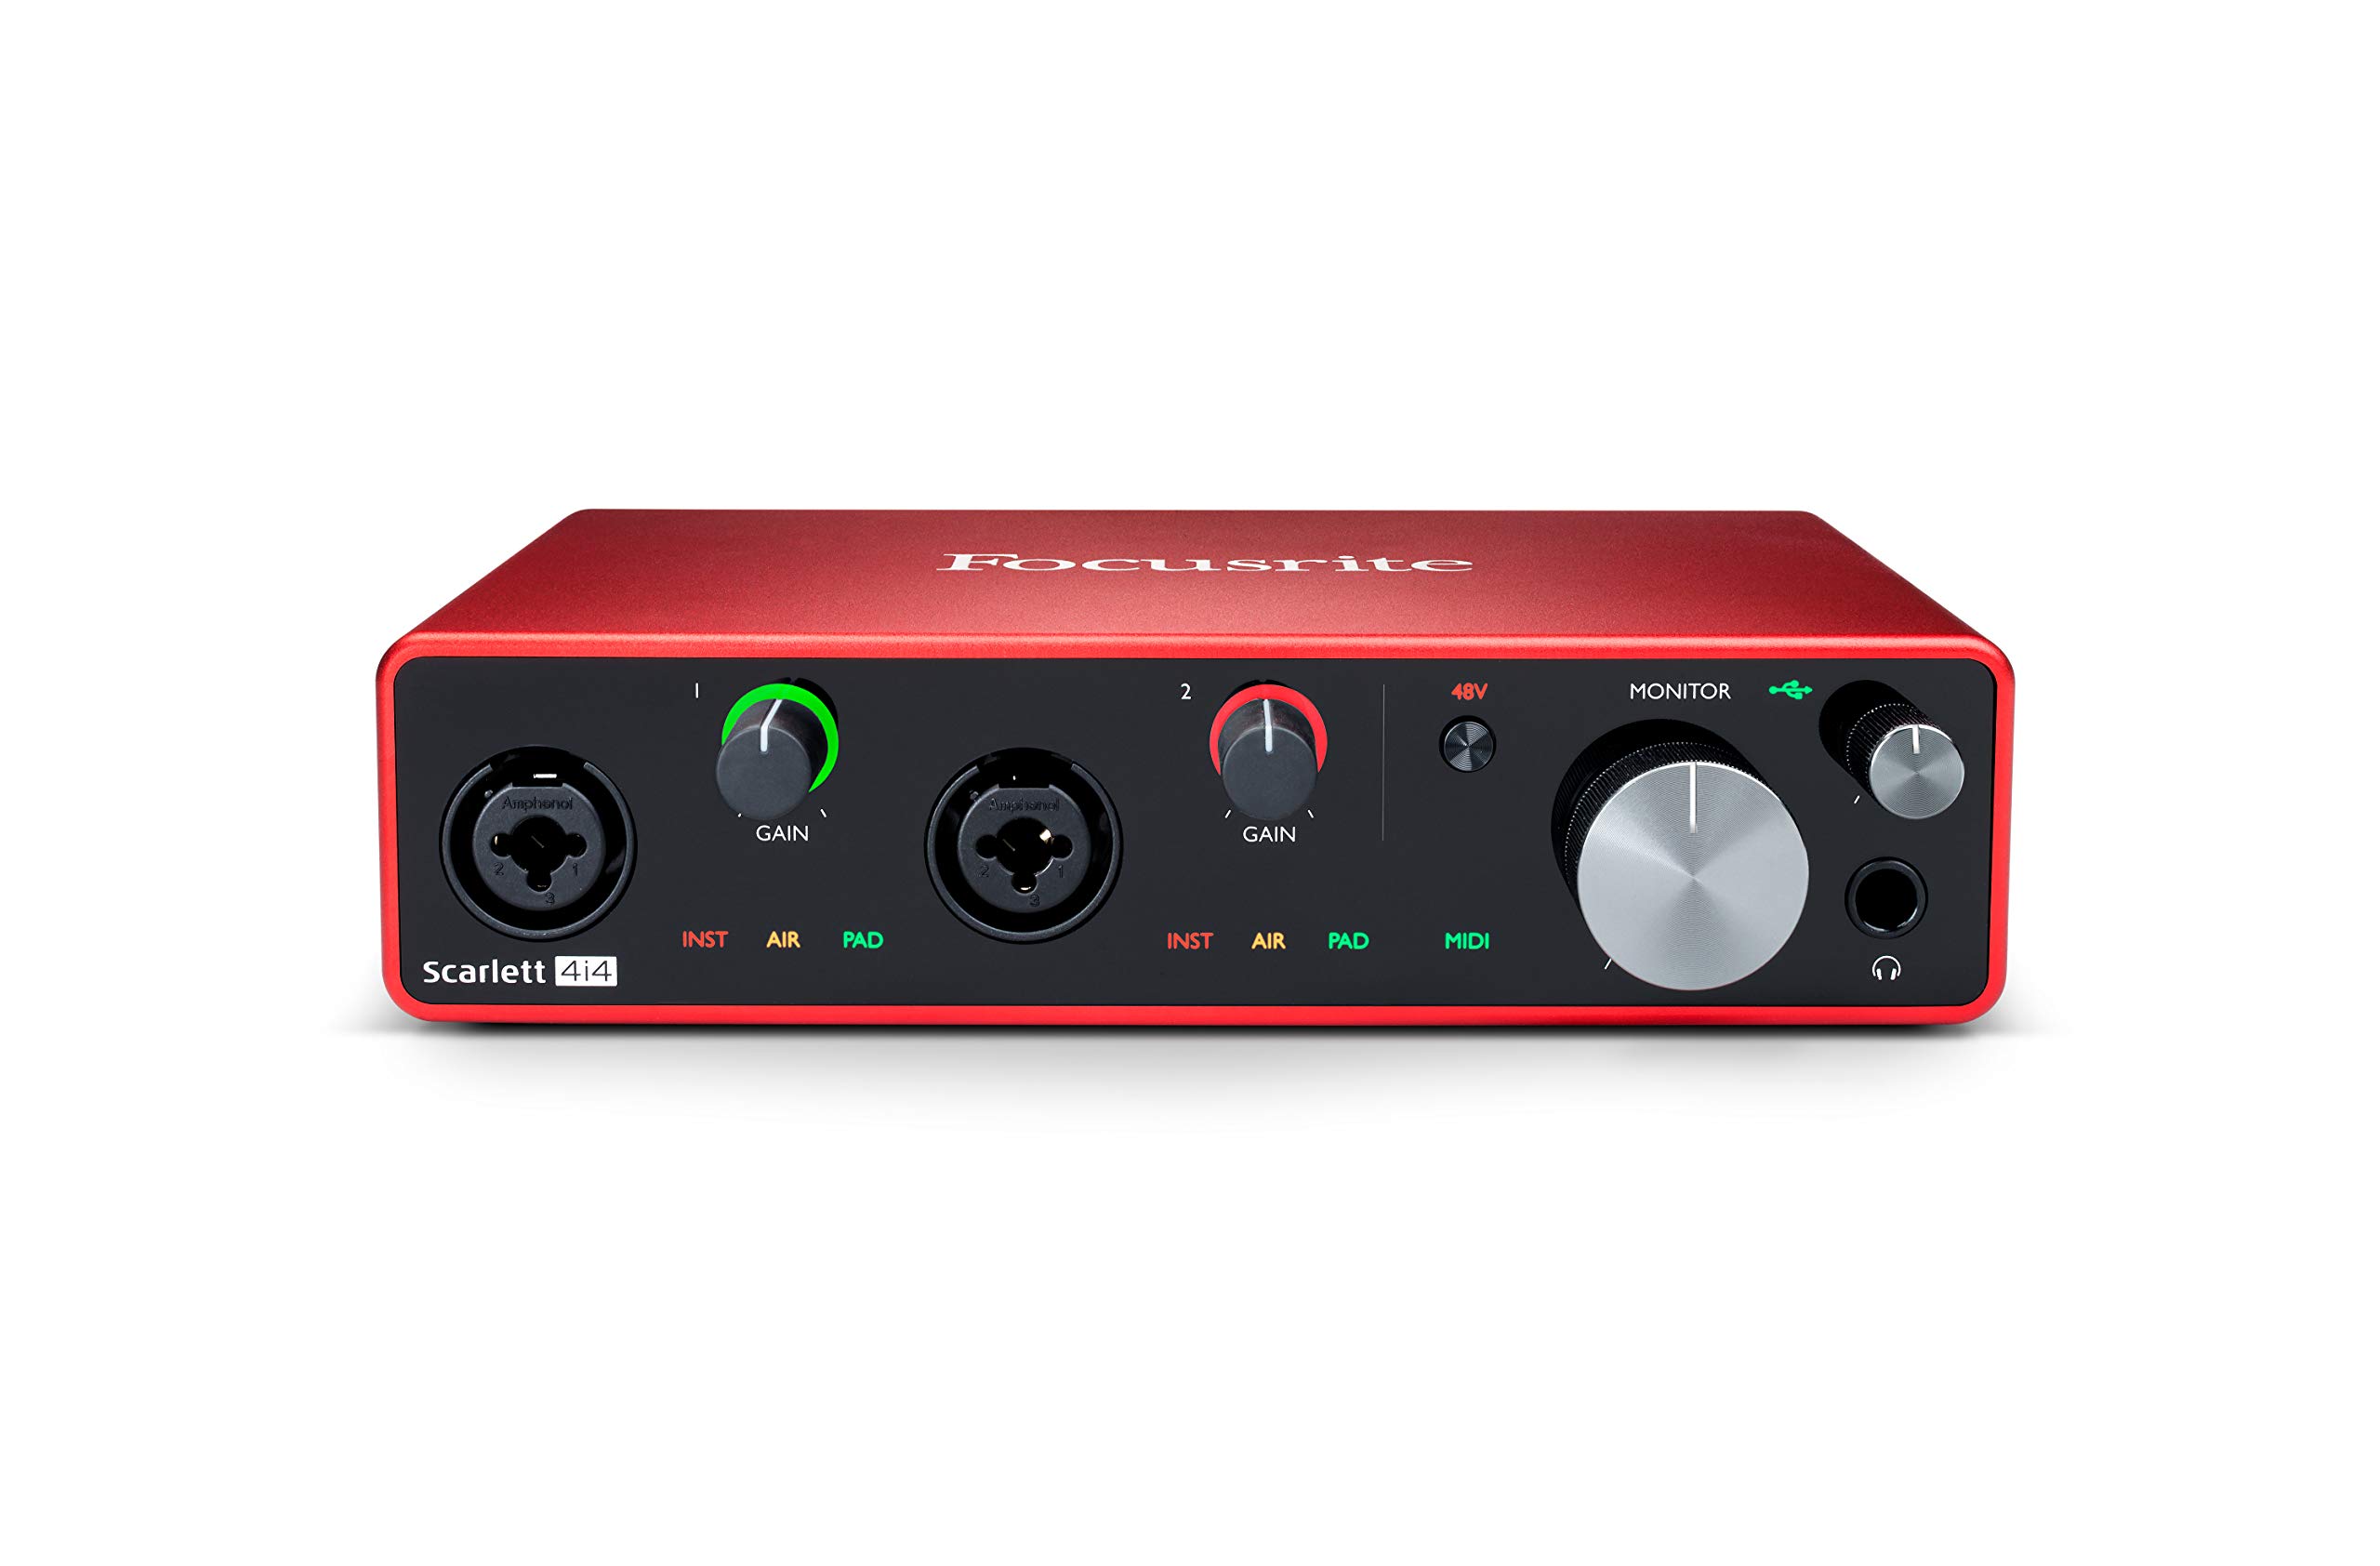 Focusrite Scarlett 4i4 3. Gen USB-Audio-Interface für Aufnahmen, Kompositionen und Streaming — High-Fidelity, Aufnahmen in Studioqualität mit transparenter Wiedergabe